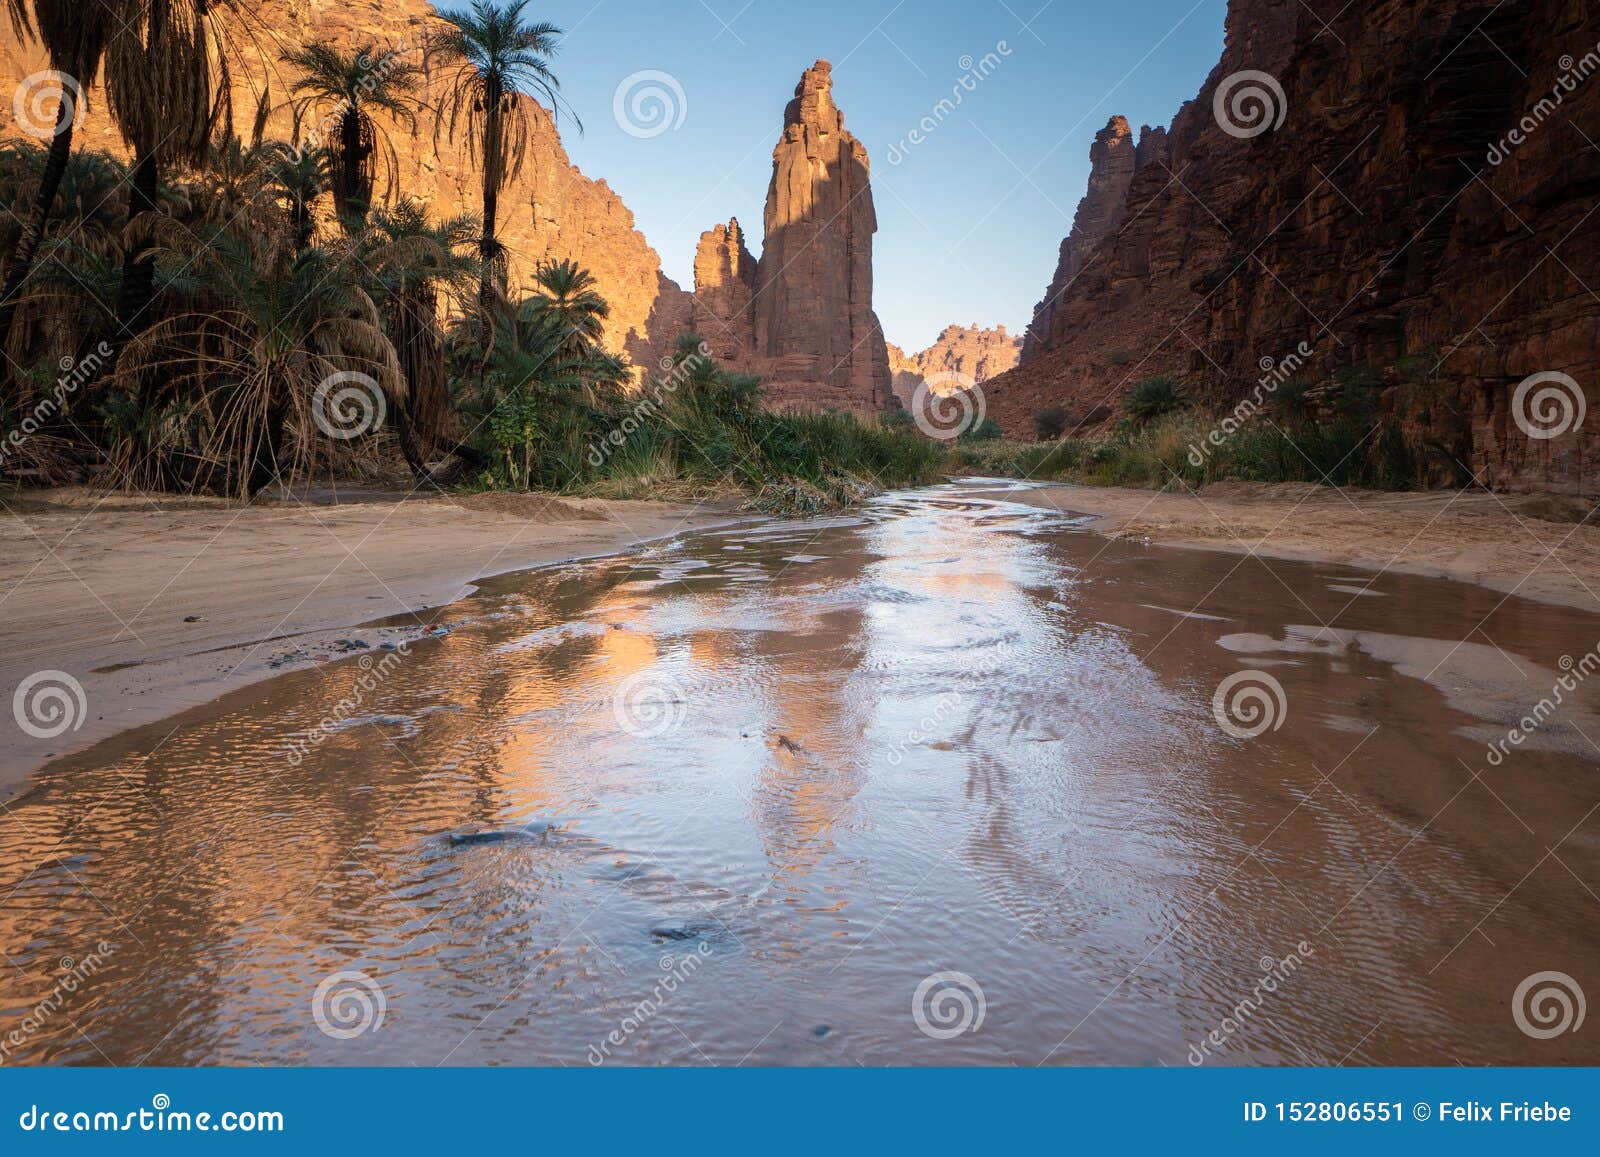 rock and oasis scenes in wadi disah in tabuk region, saudi arabia